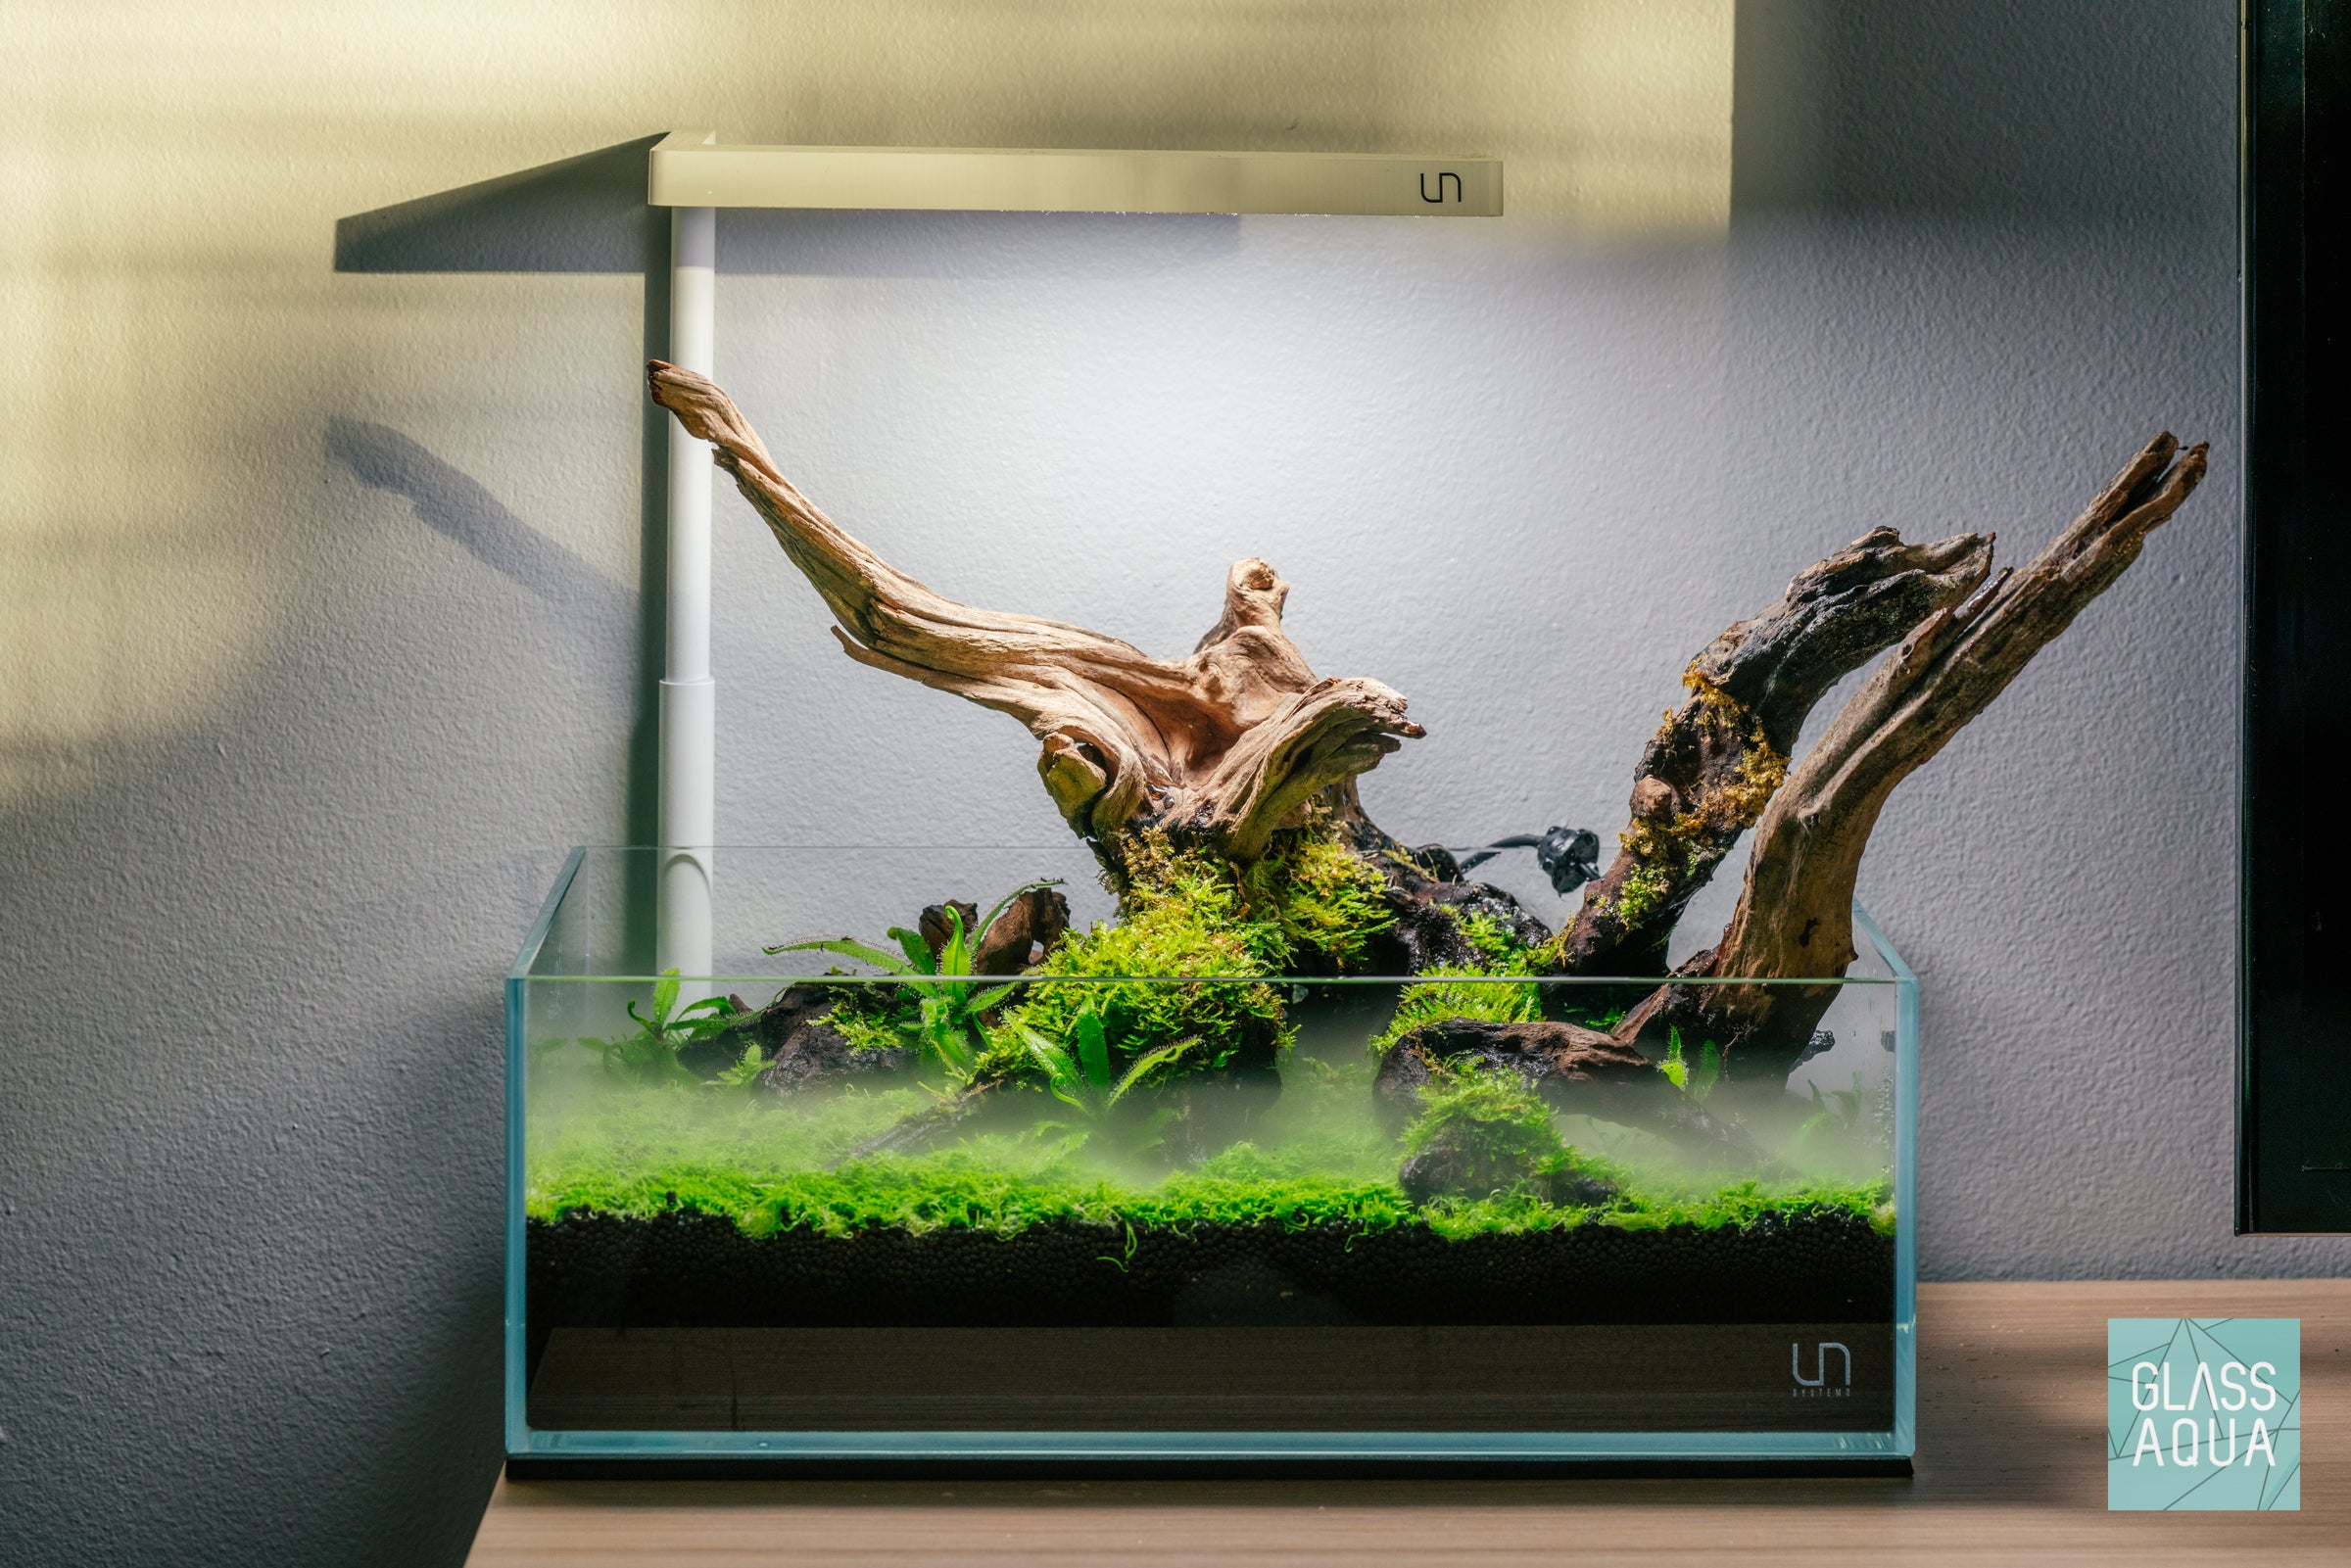 Carnivorous: Dry Aquarium Terrarium UNS 5S Shallow – Glass Aqua